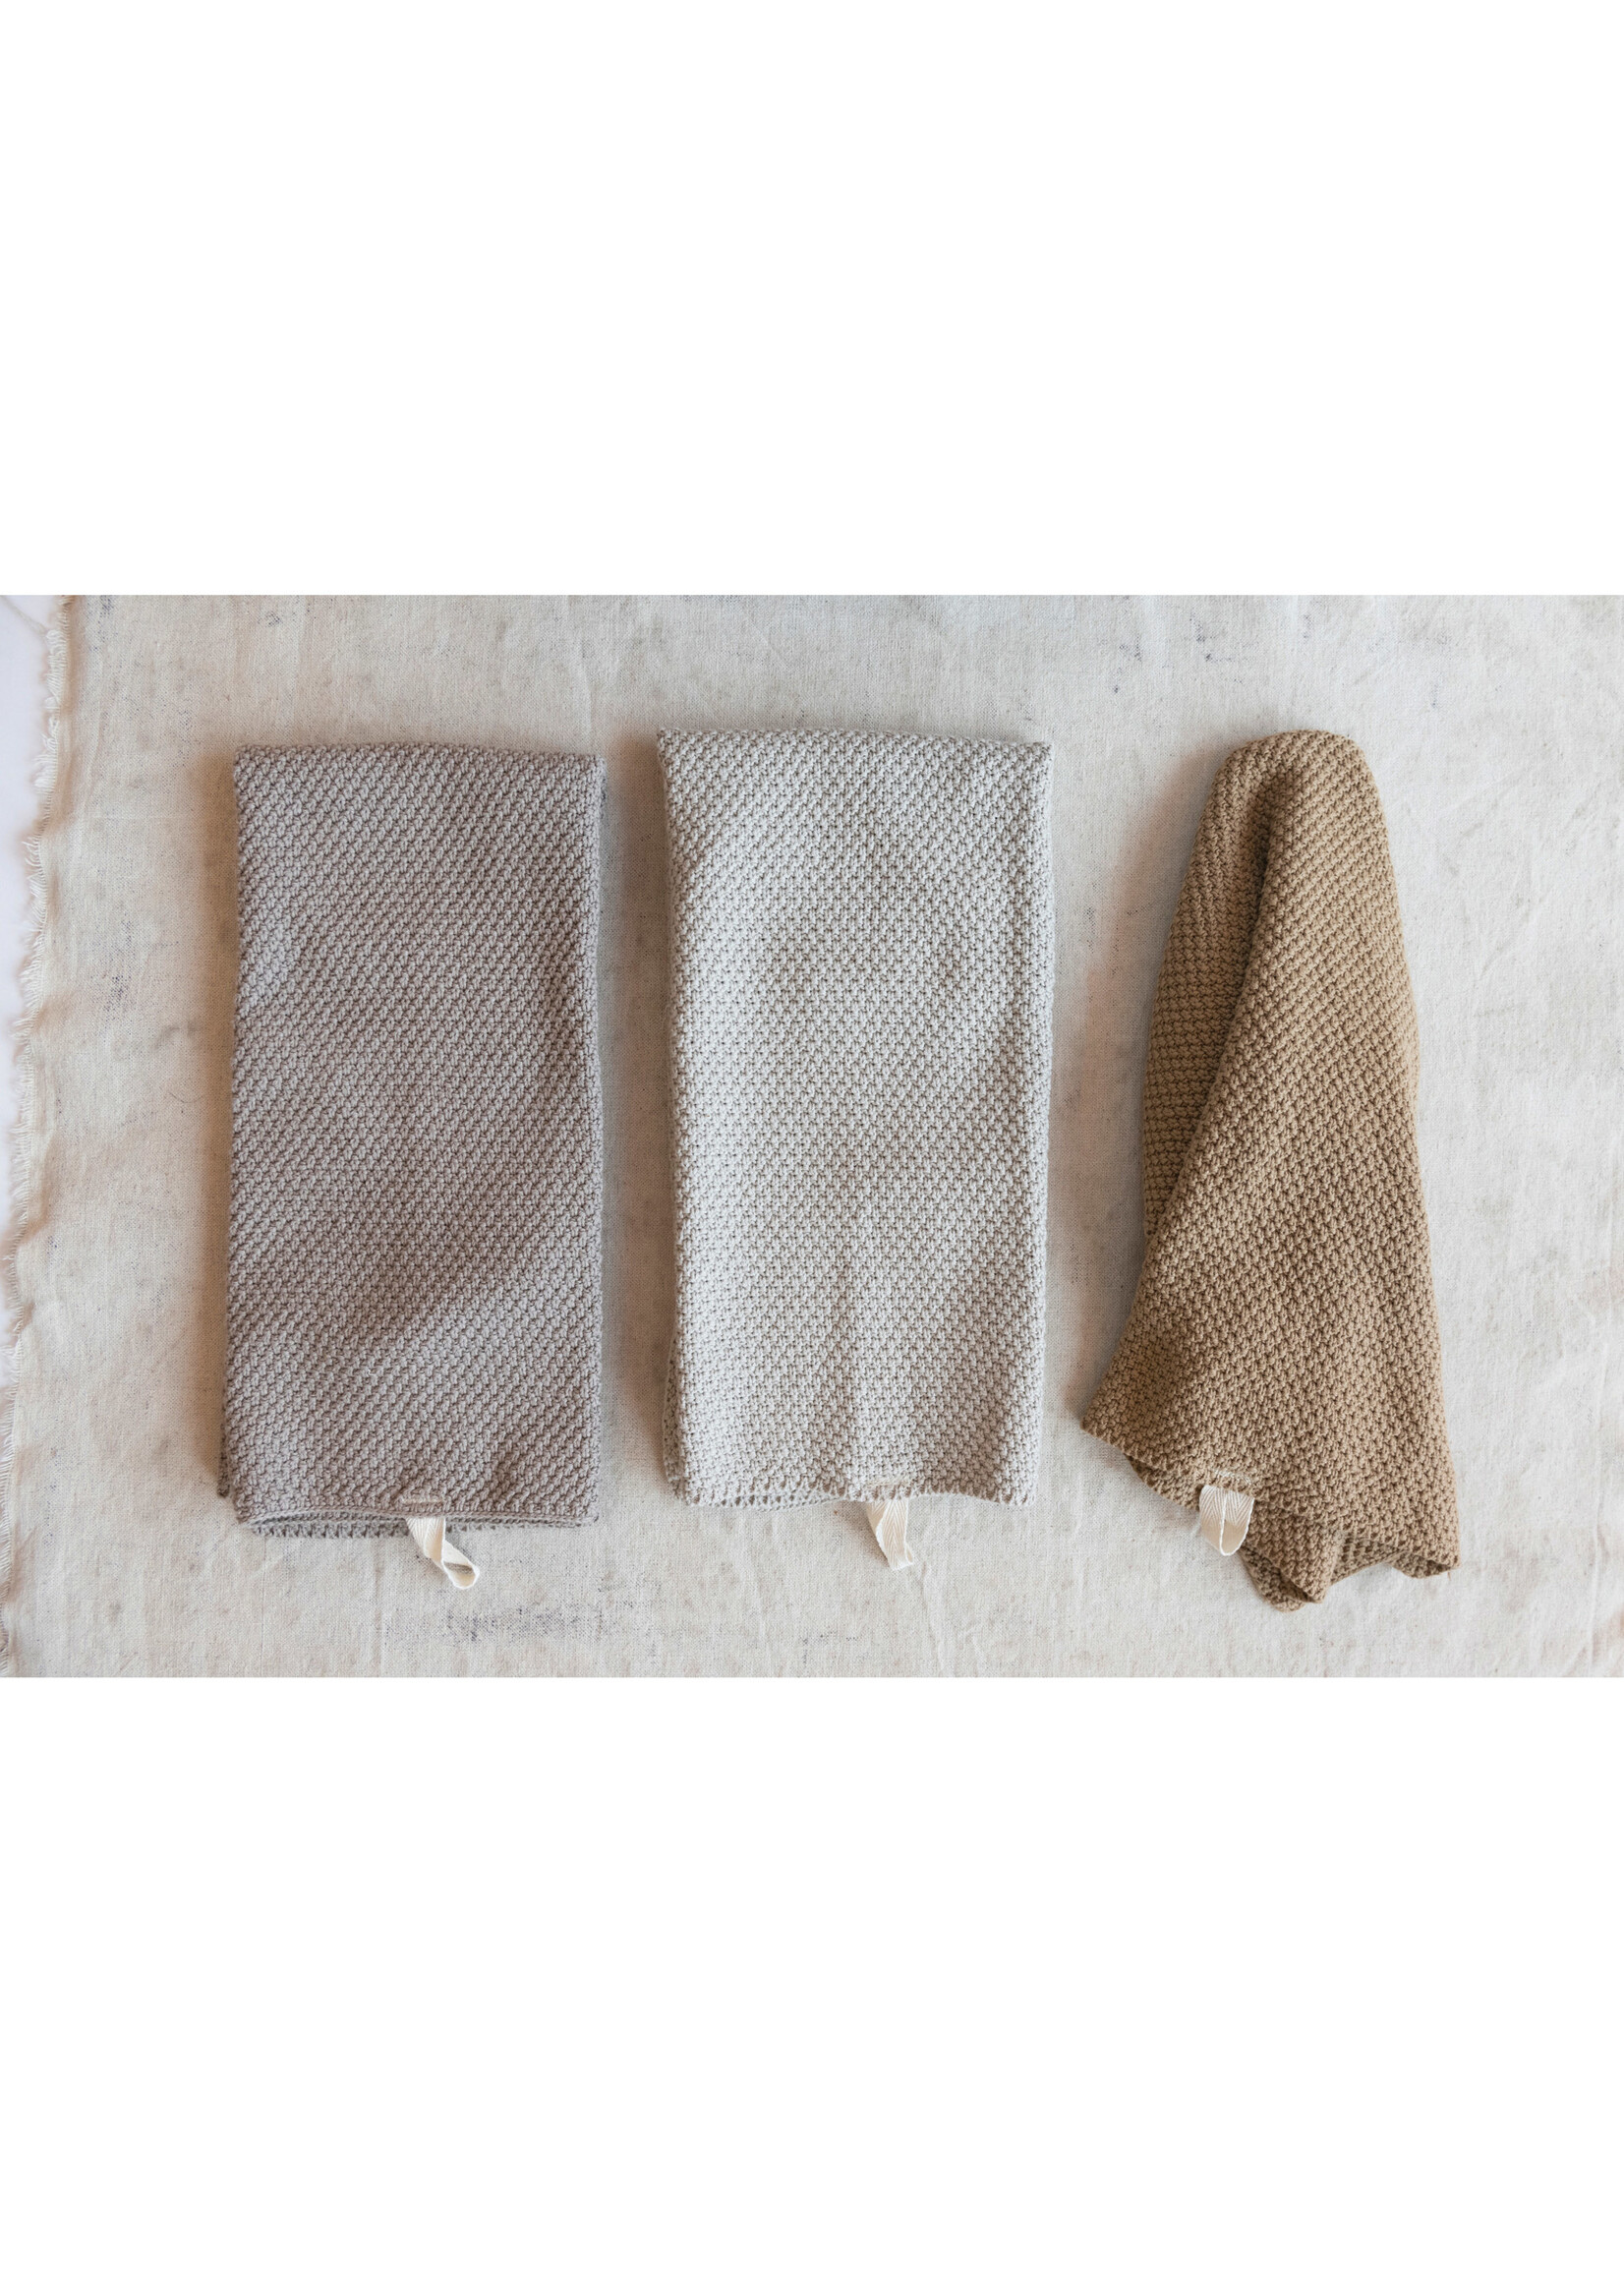 Cotton Knit Tea Towels, set of 3